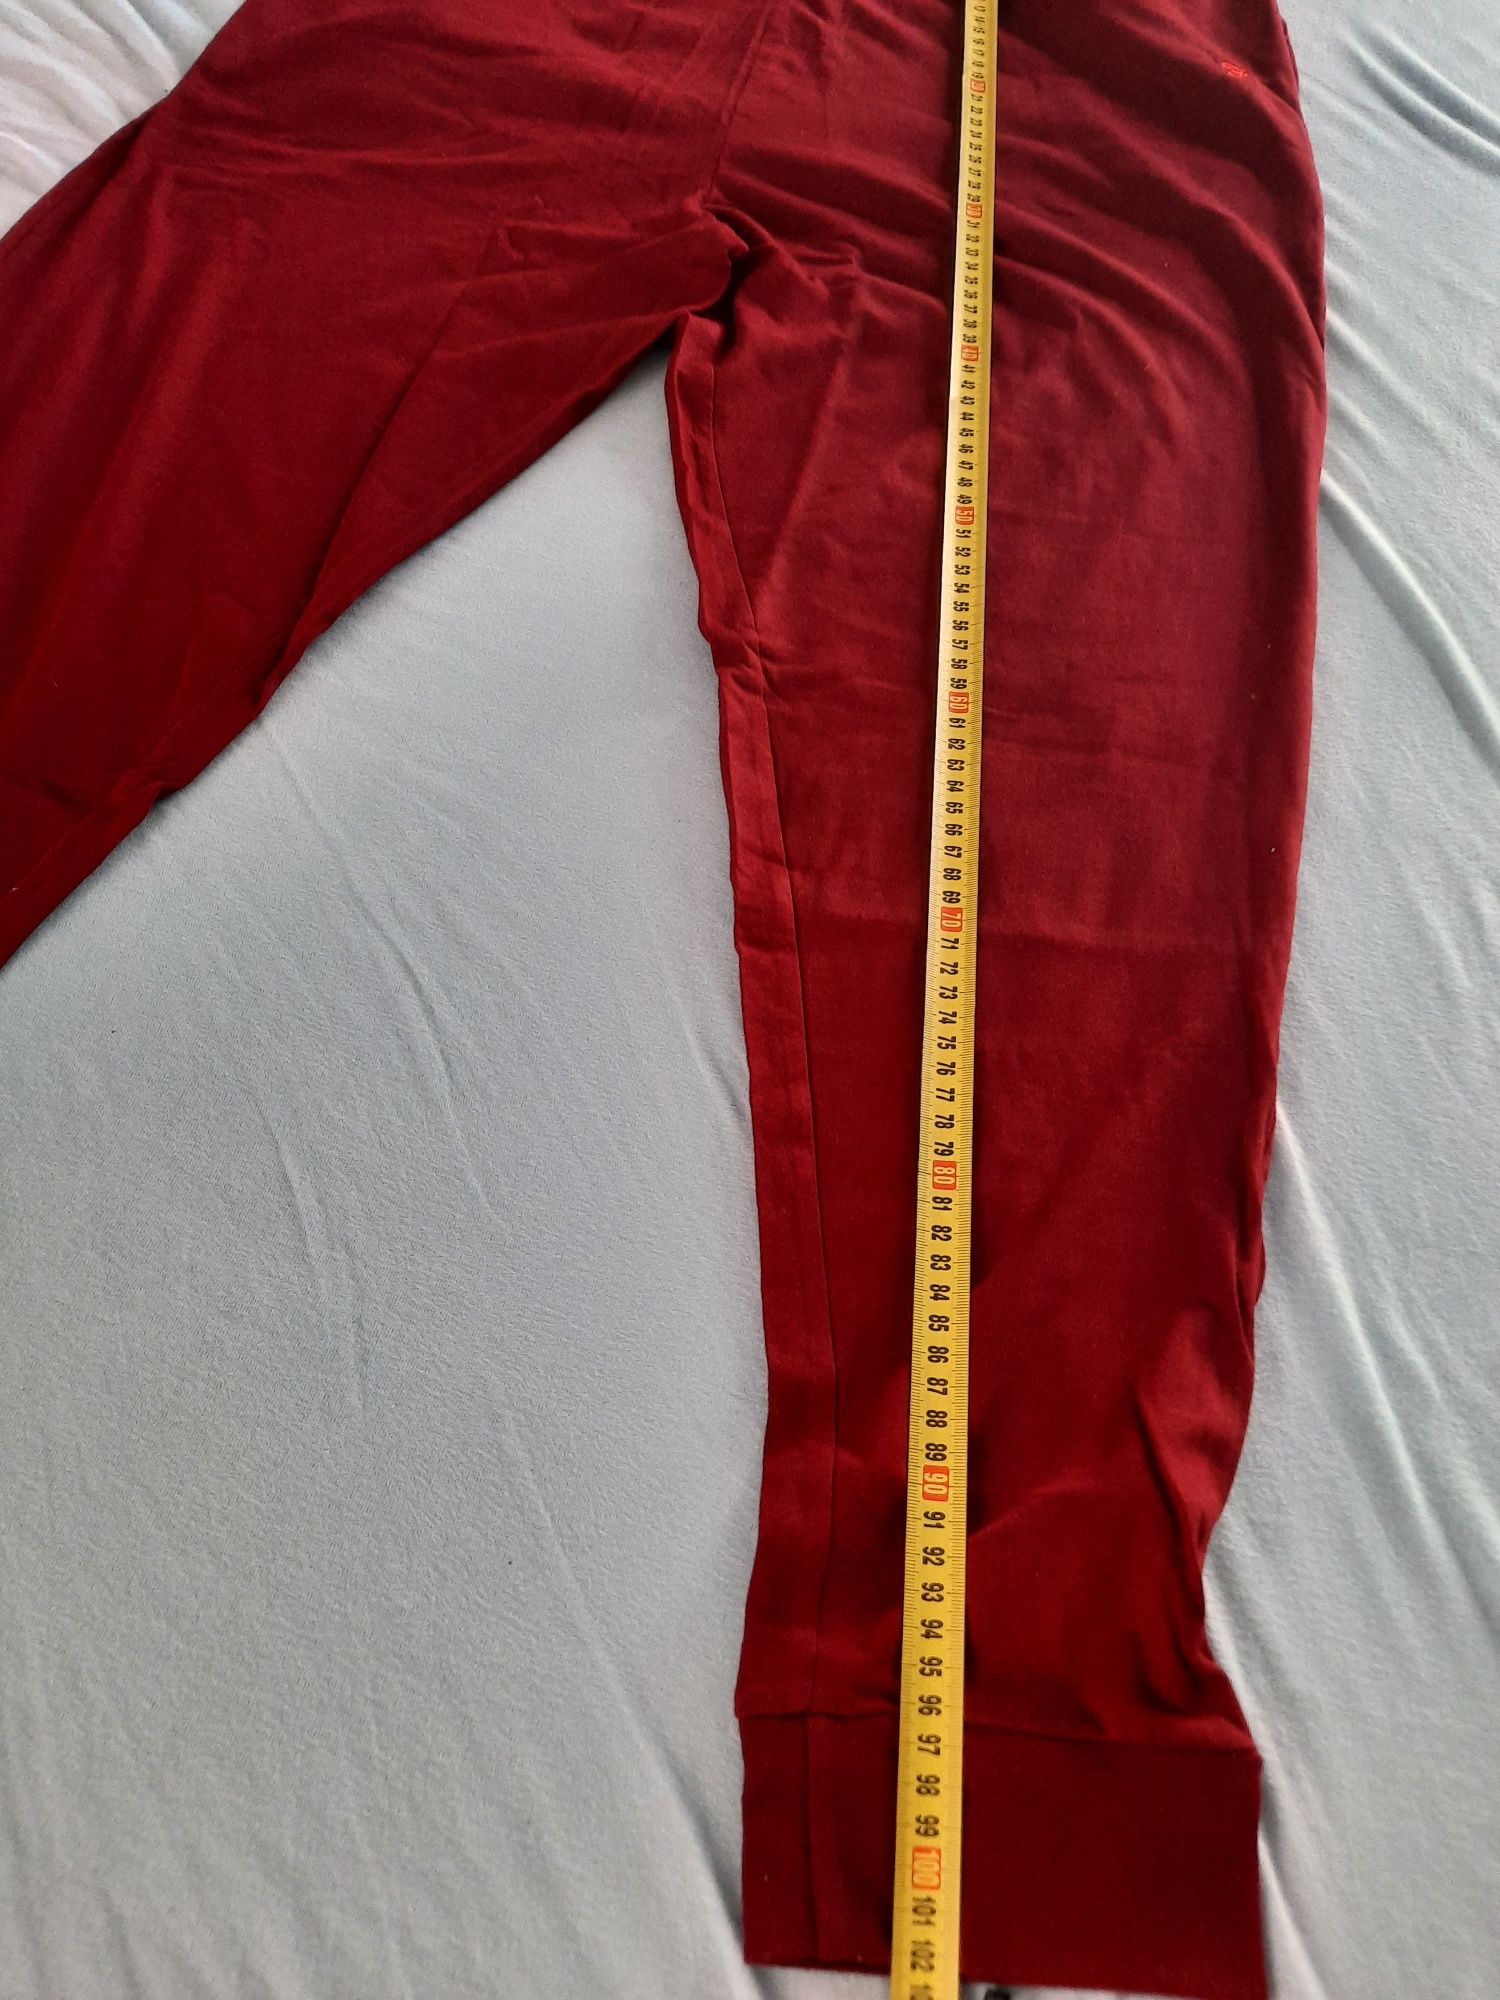 Dresowe bawełniane spodnie meskie farah rozmiar xxl